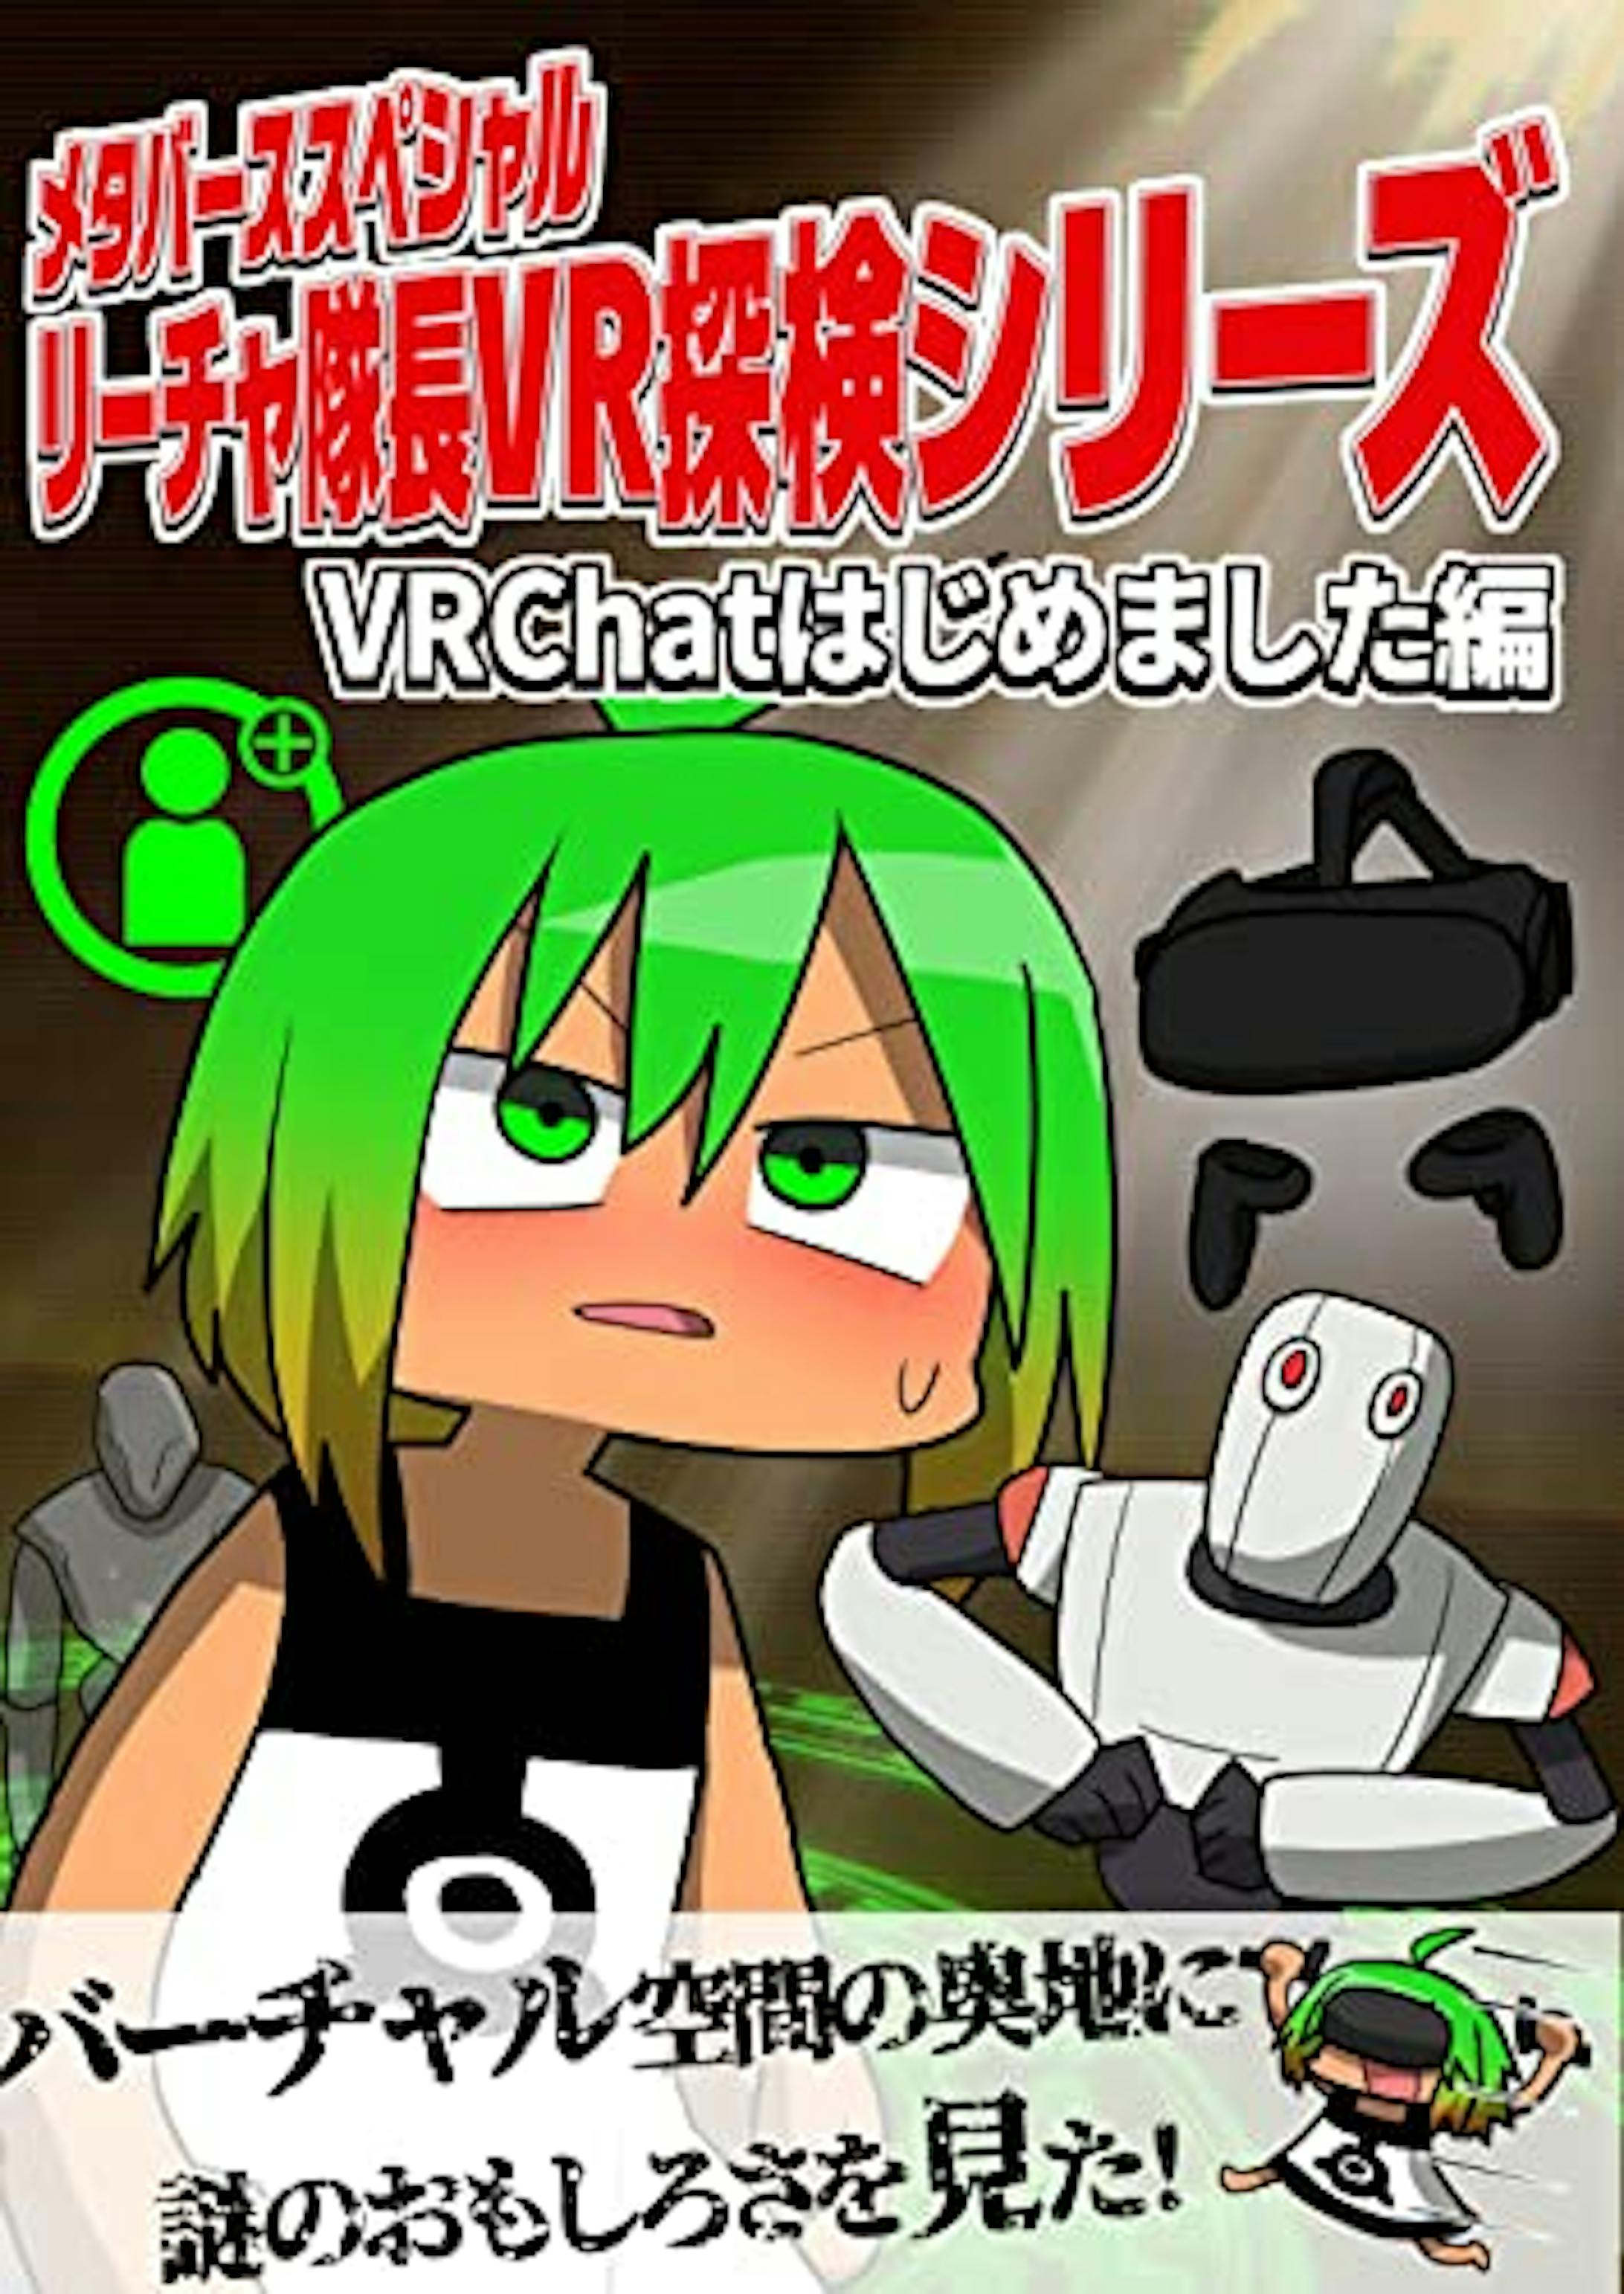 メタバーススペシャル リーチャ隊長VR探検シリーズ: VRChatはじめました編-1